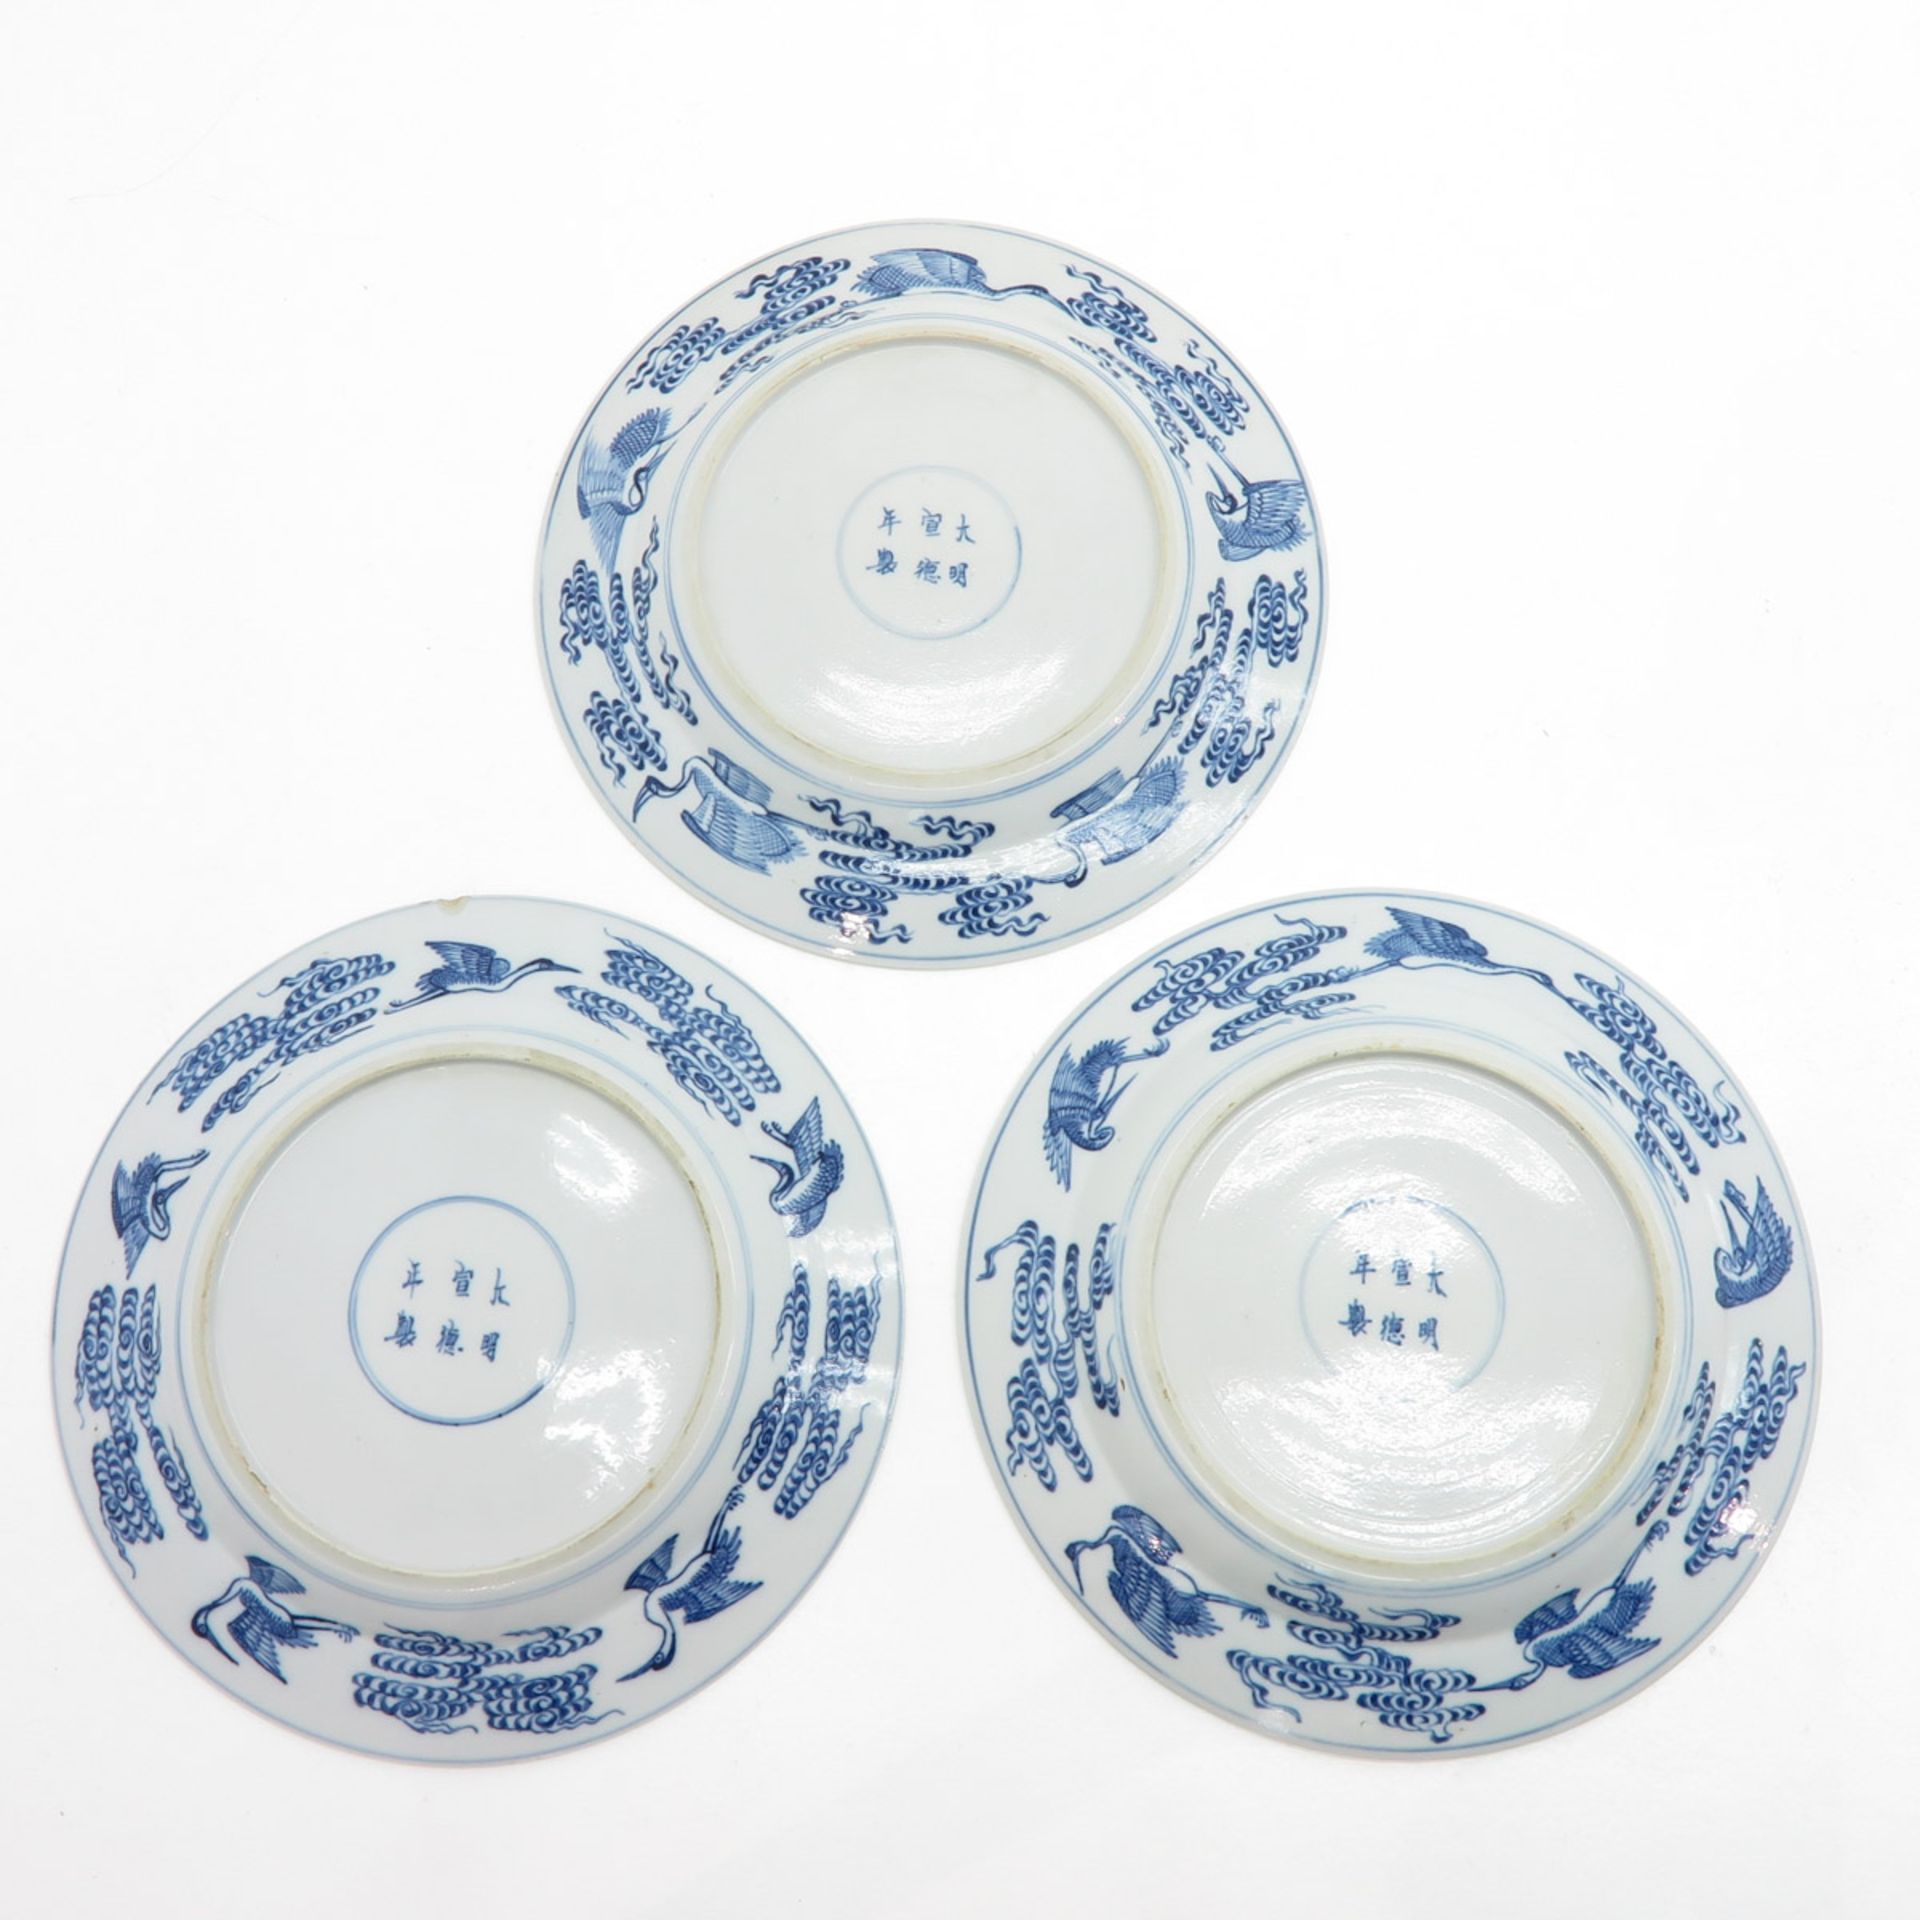 Lot of 3 China Porcelain Plates Depicting 8 Immortals - Bild 2 aus 2